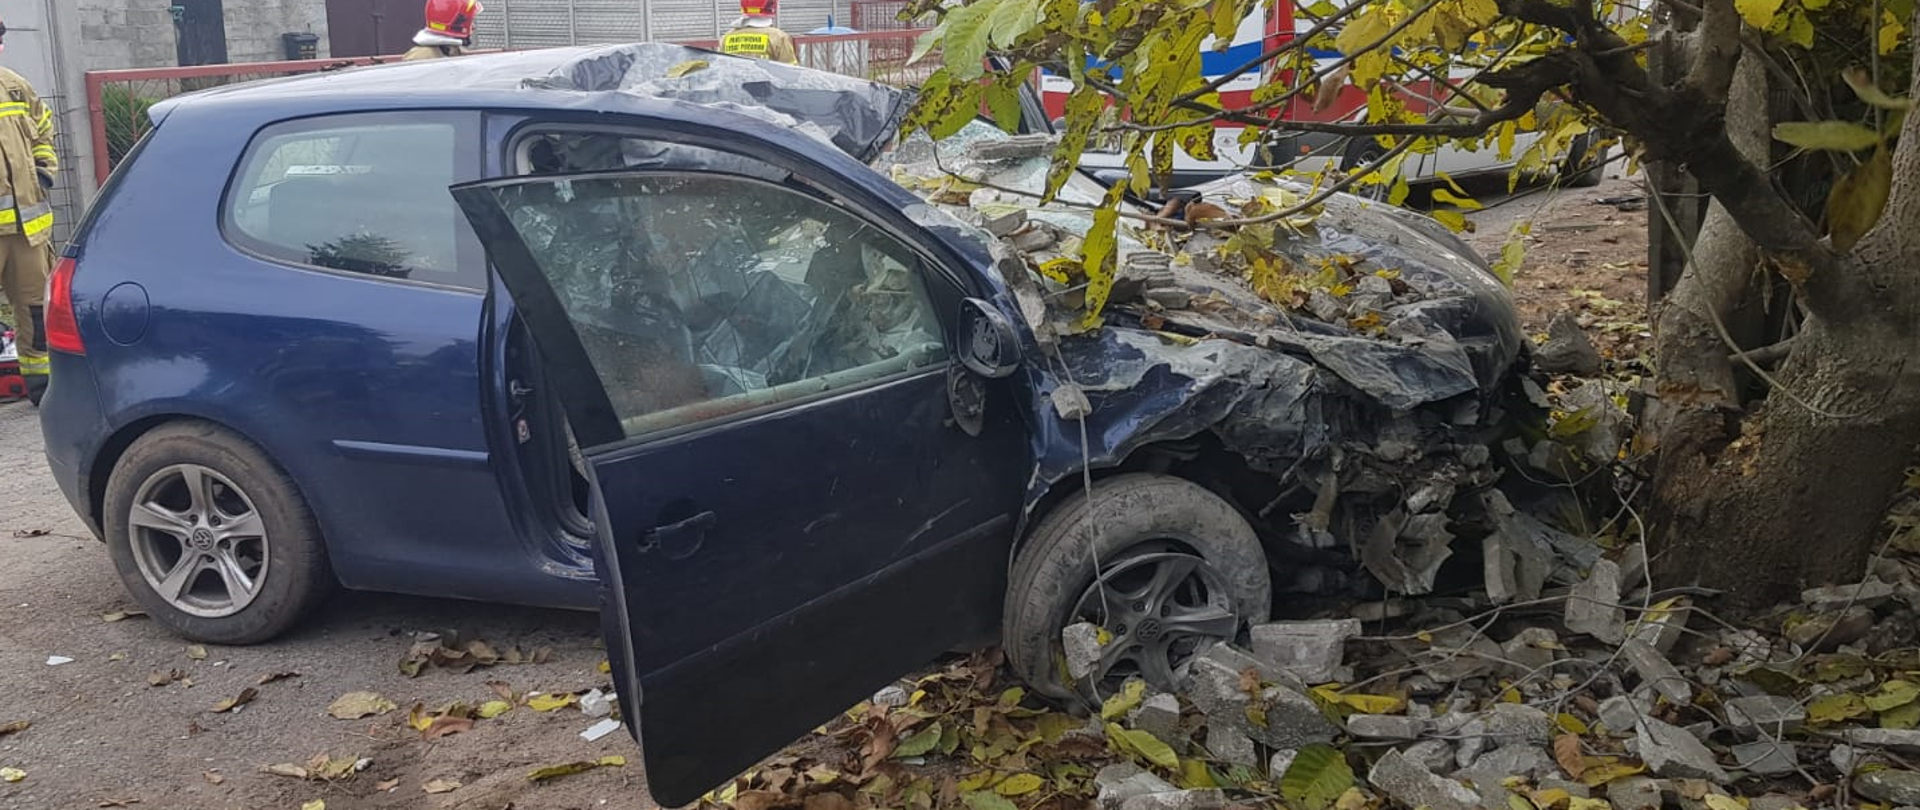 Zdjęcie przedstawia samochód osobowy po wypadku drogowym.